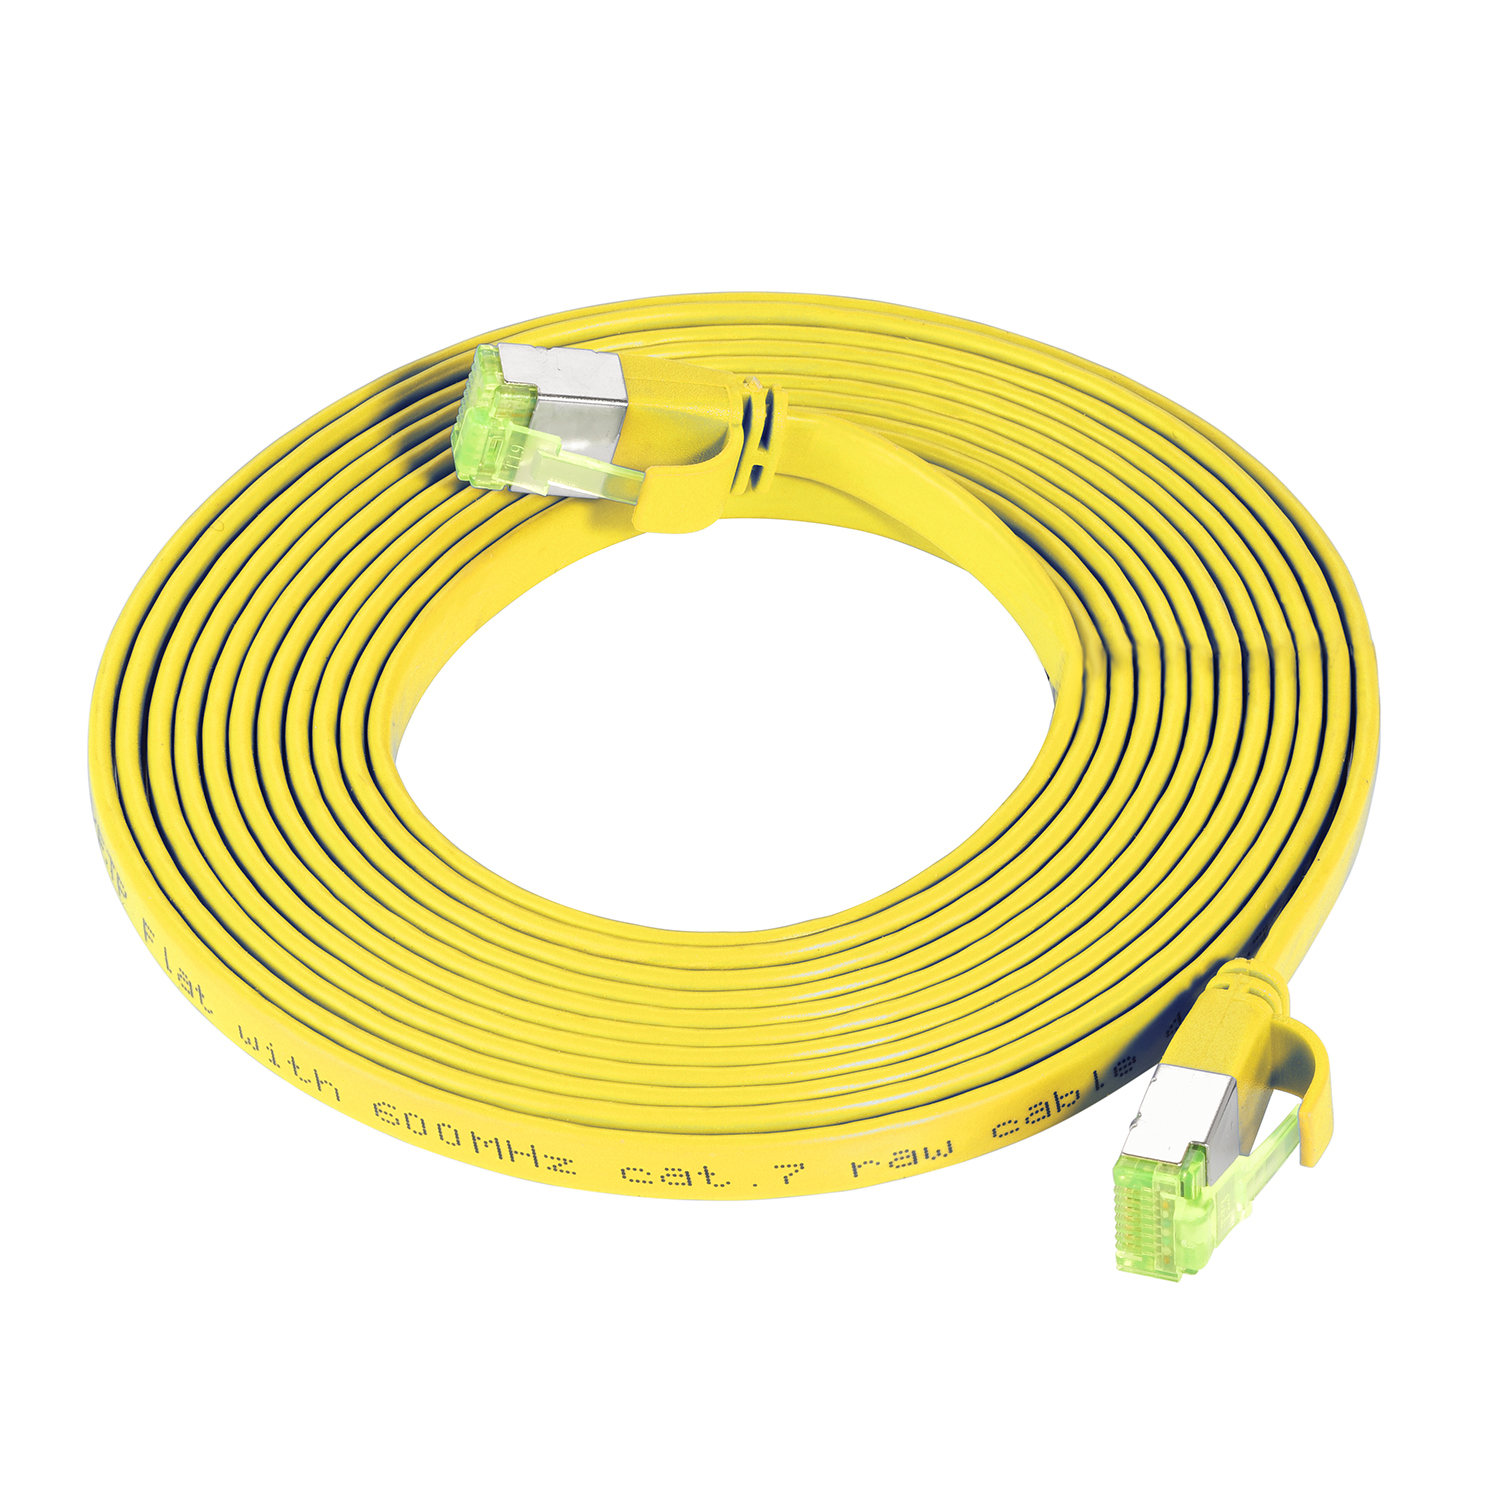 TPFNET 7,5m Patchkabel / 10 Netzwerkkabel, Flachkabel U/FTP m gelb, GBit, 7,5